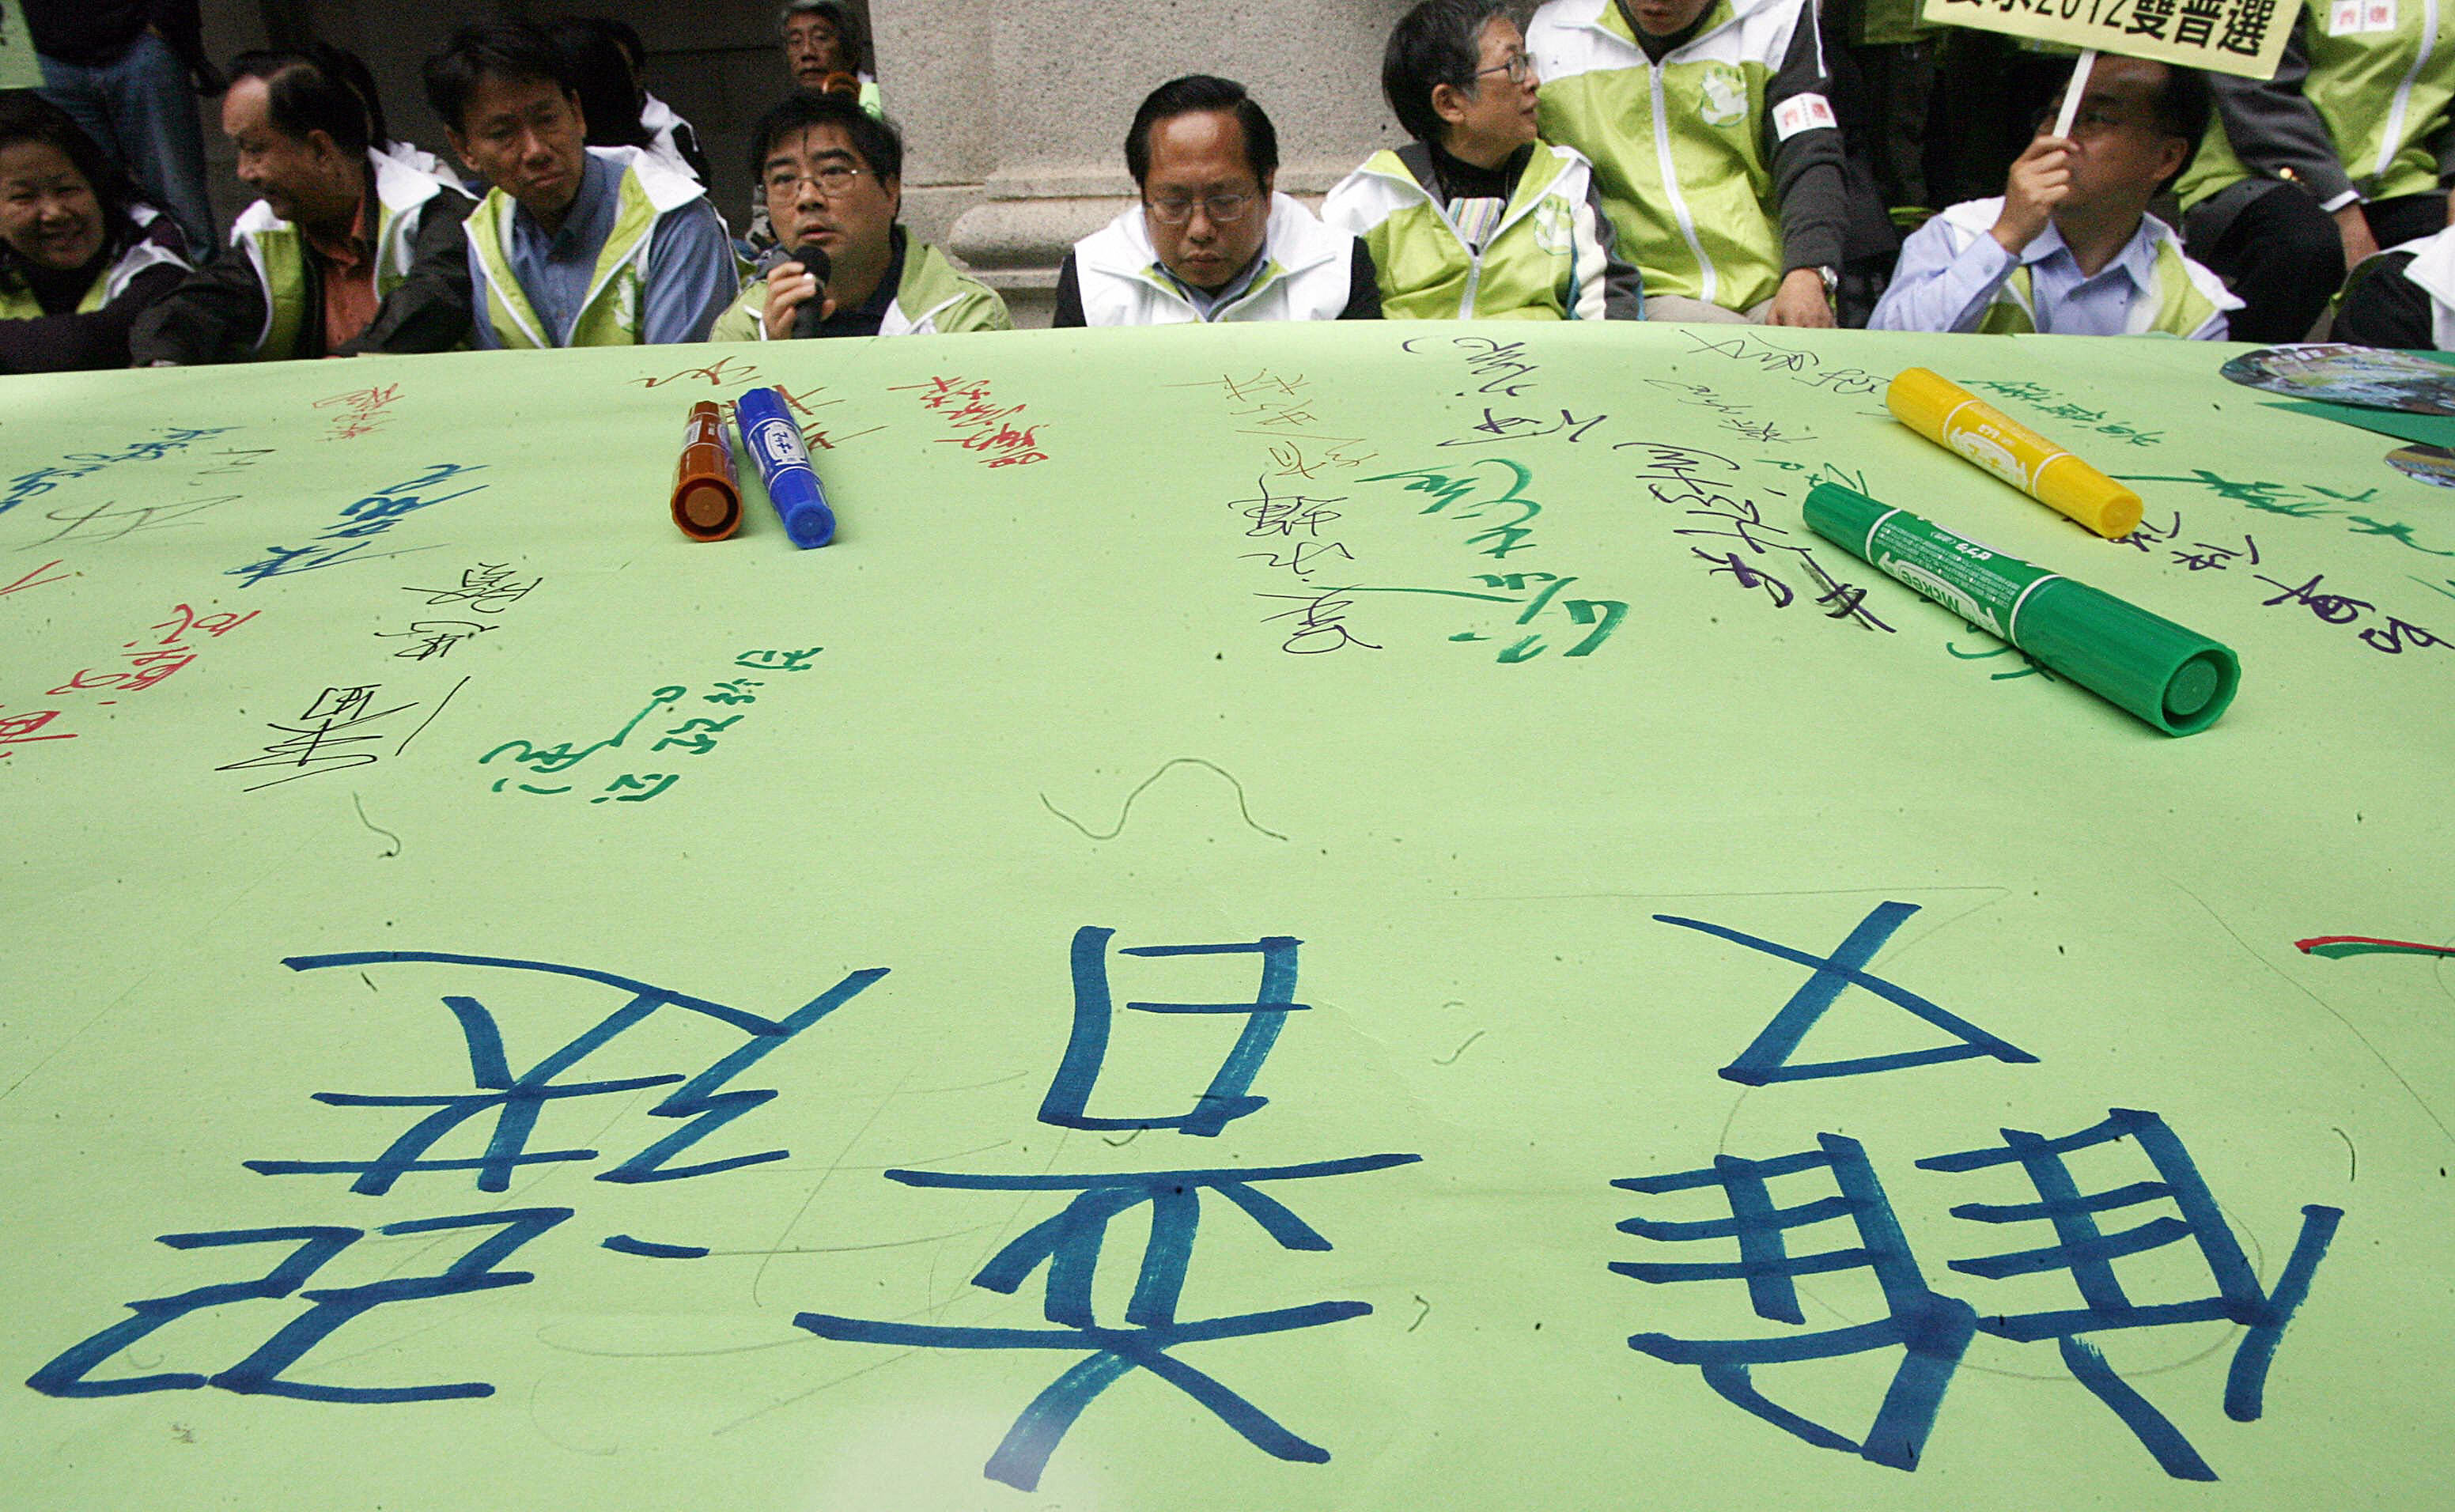 香港民主派人士期望的是特首和立法會的雙普選。